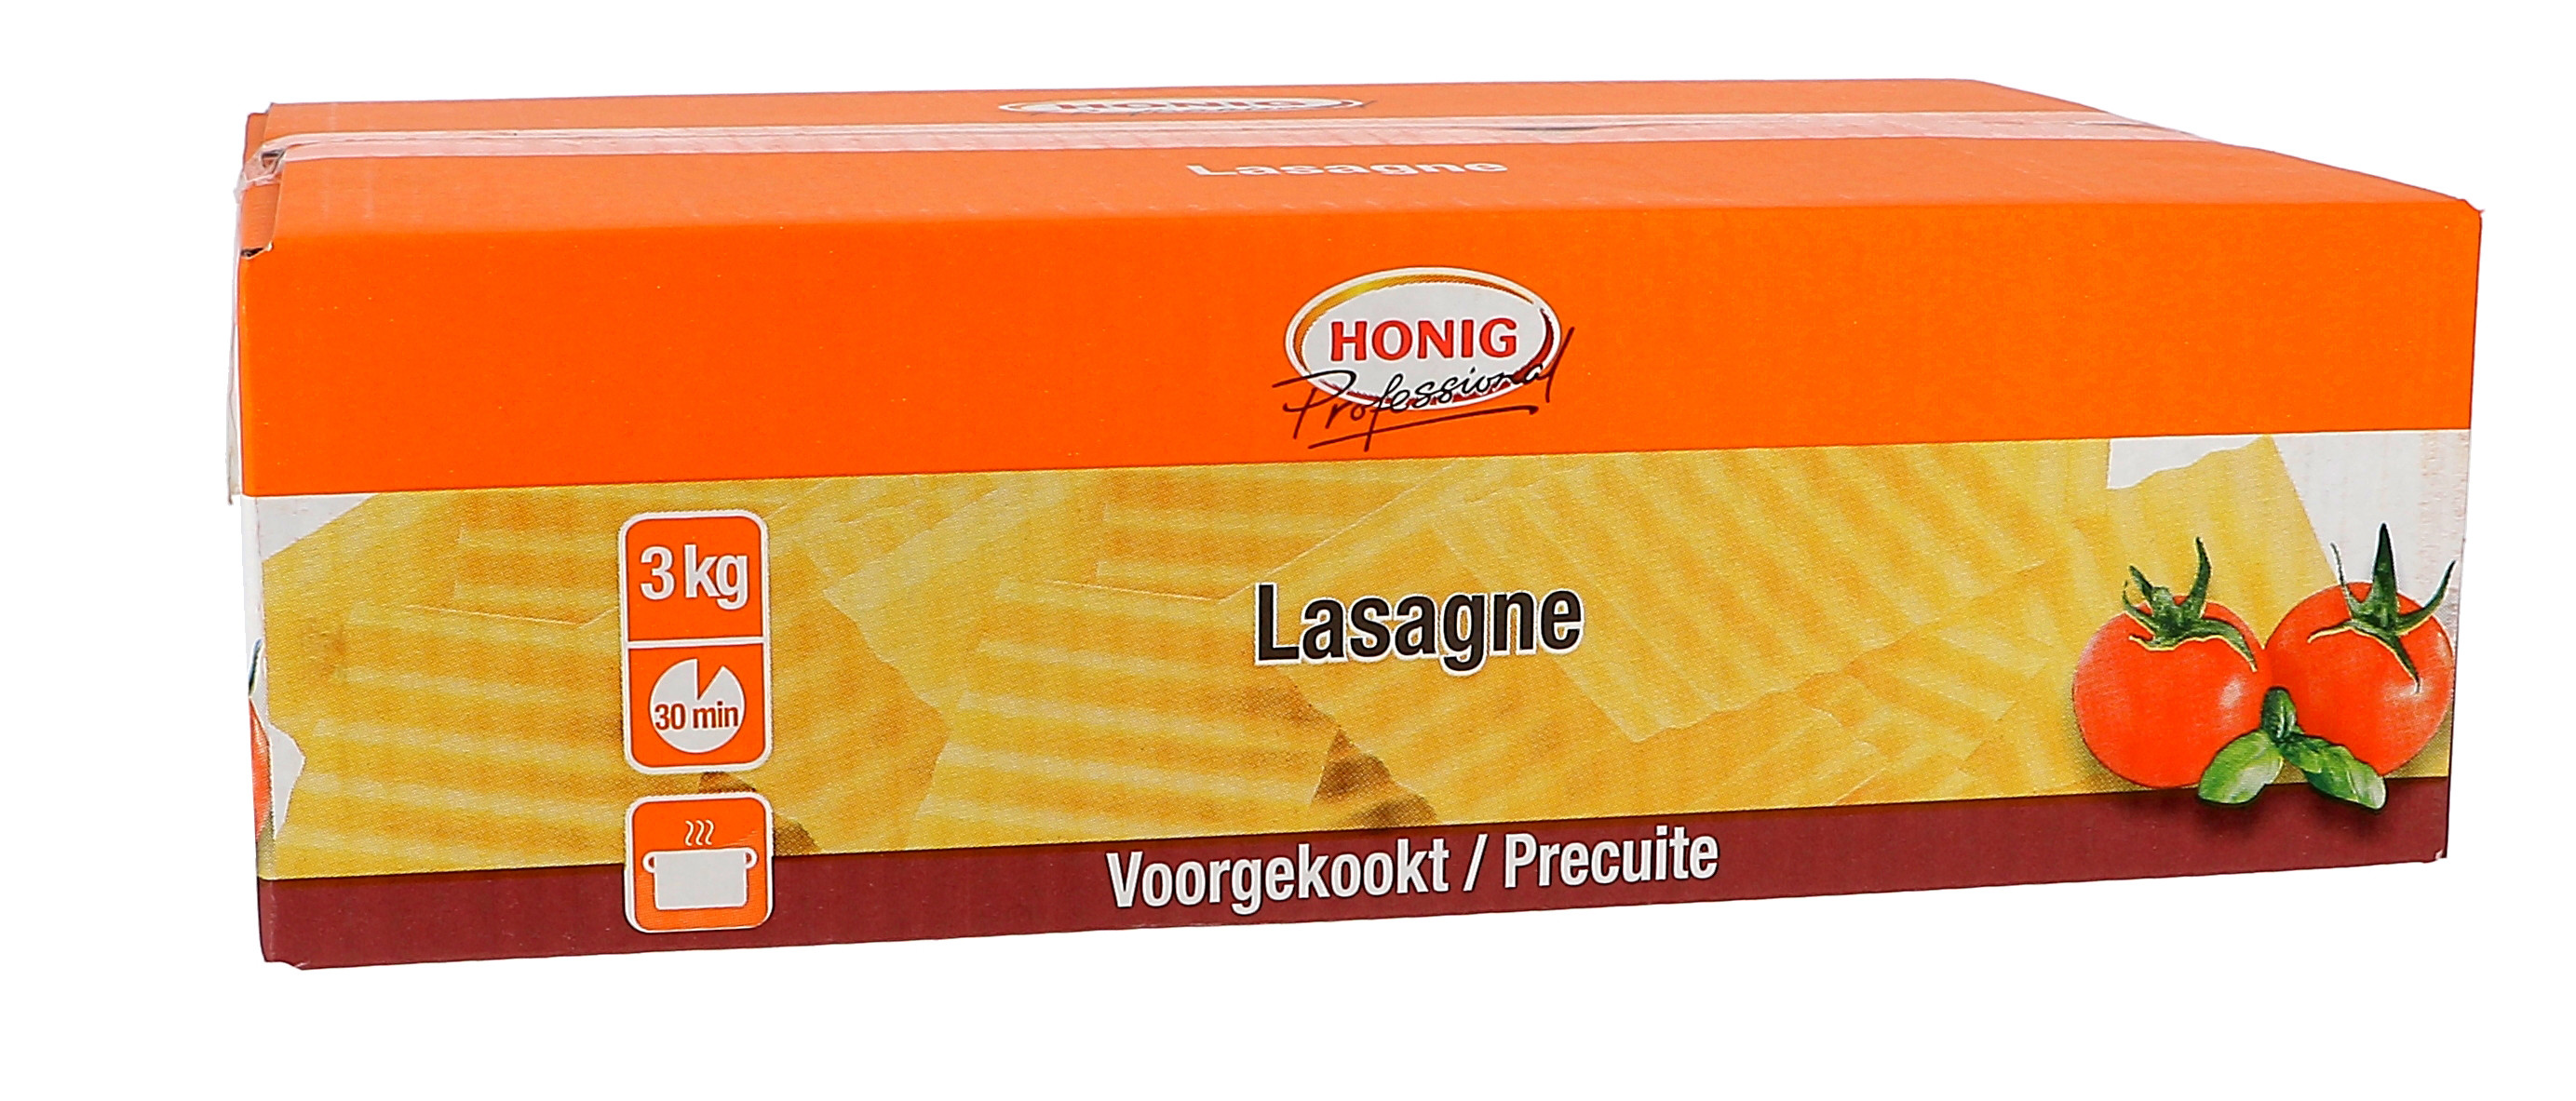 Honig pates lasagne en feuilles blanc précuite 3kg Professional